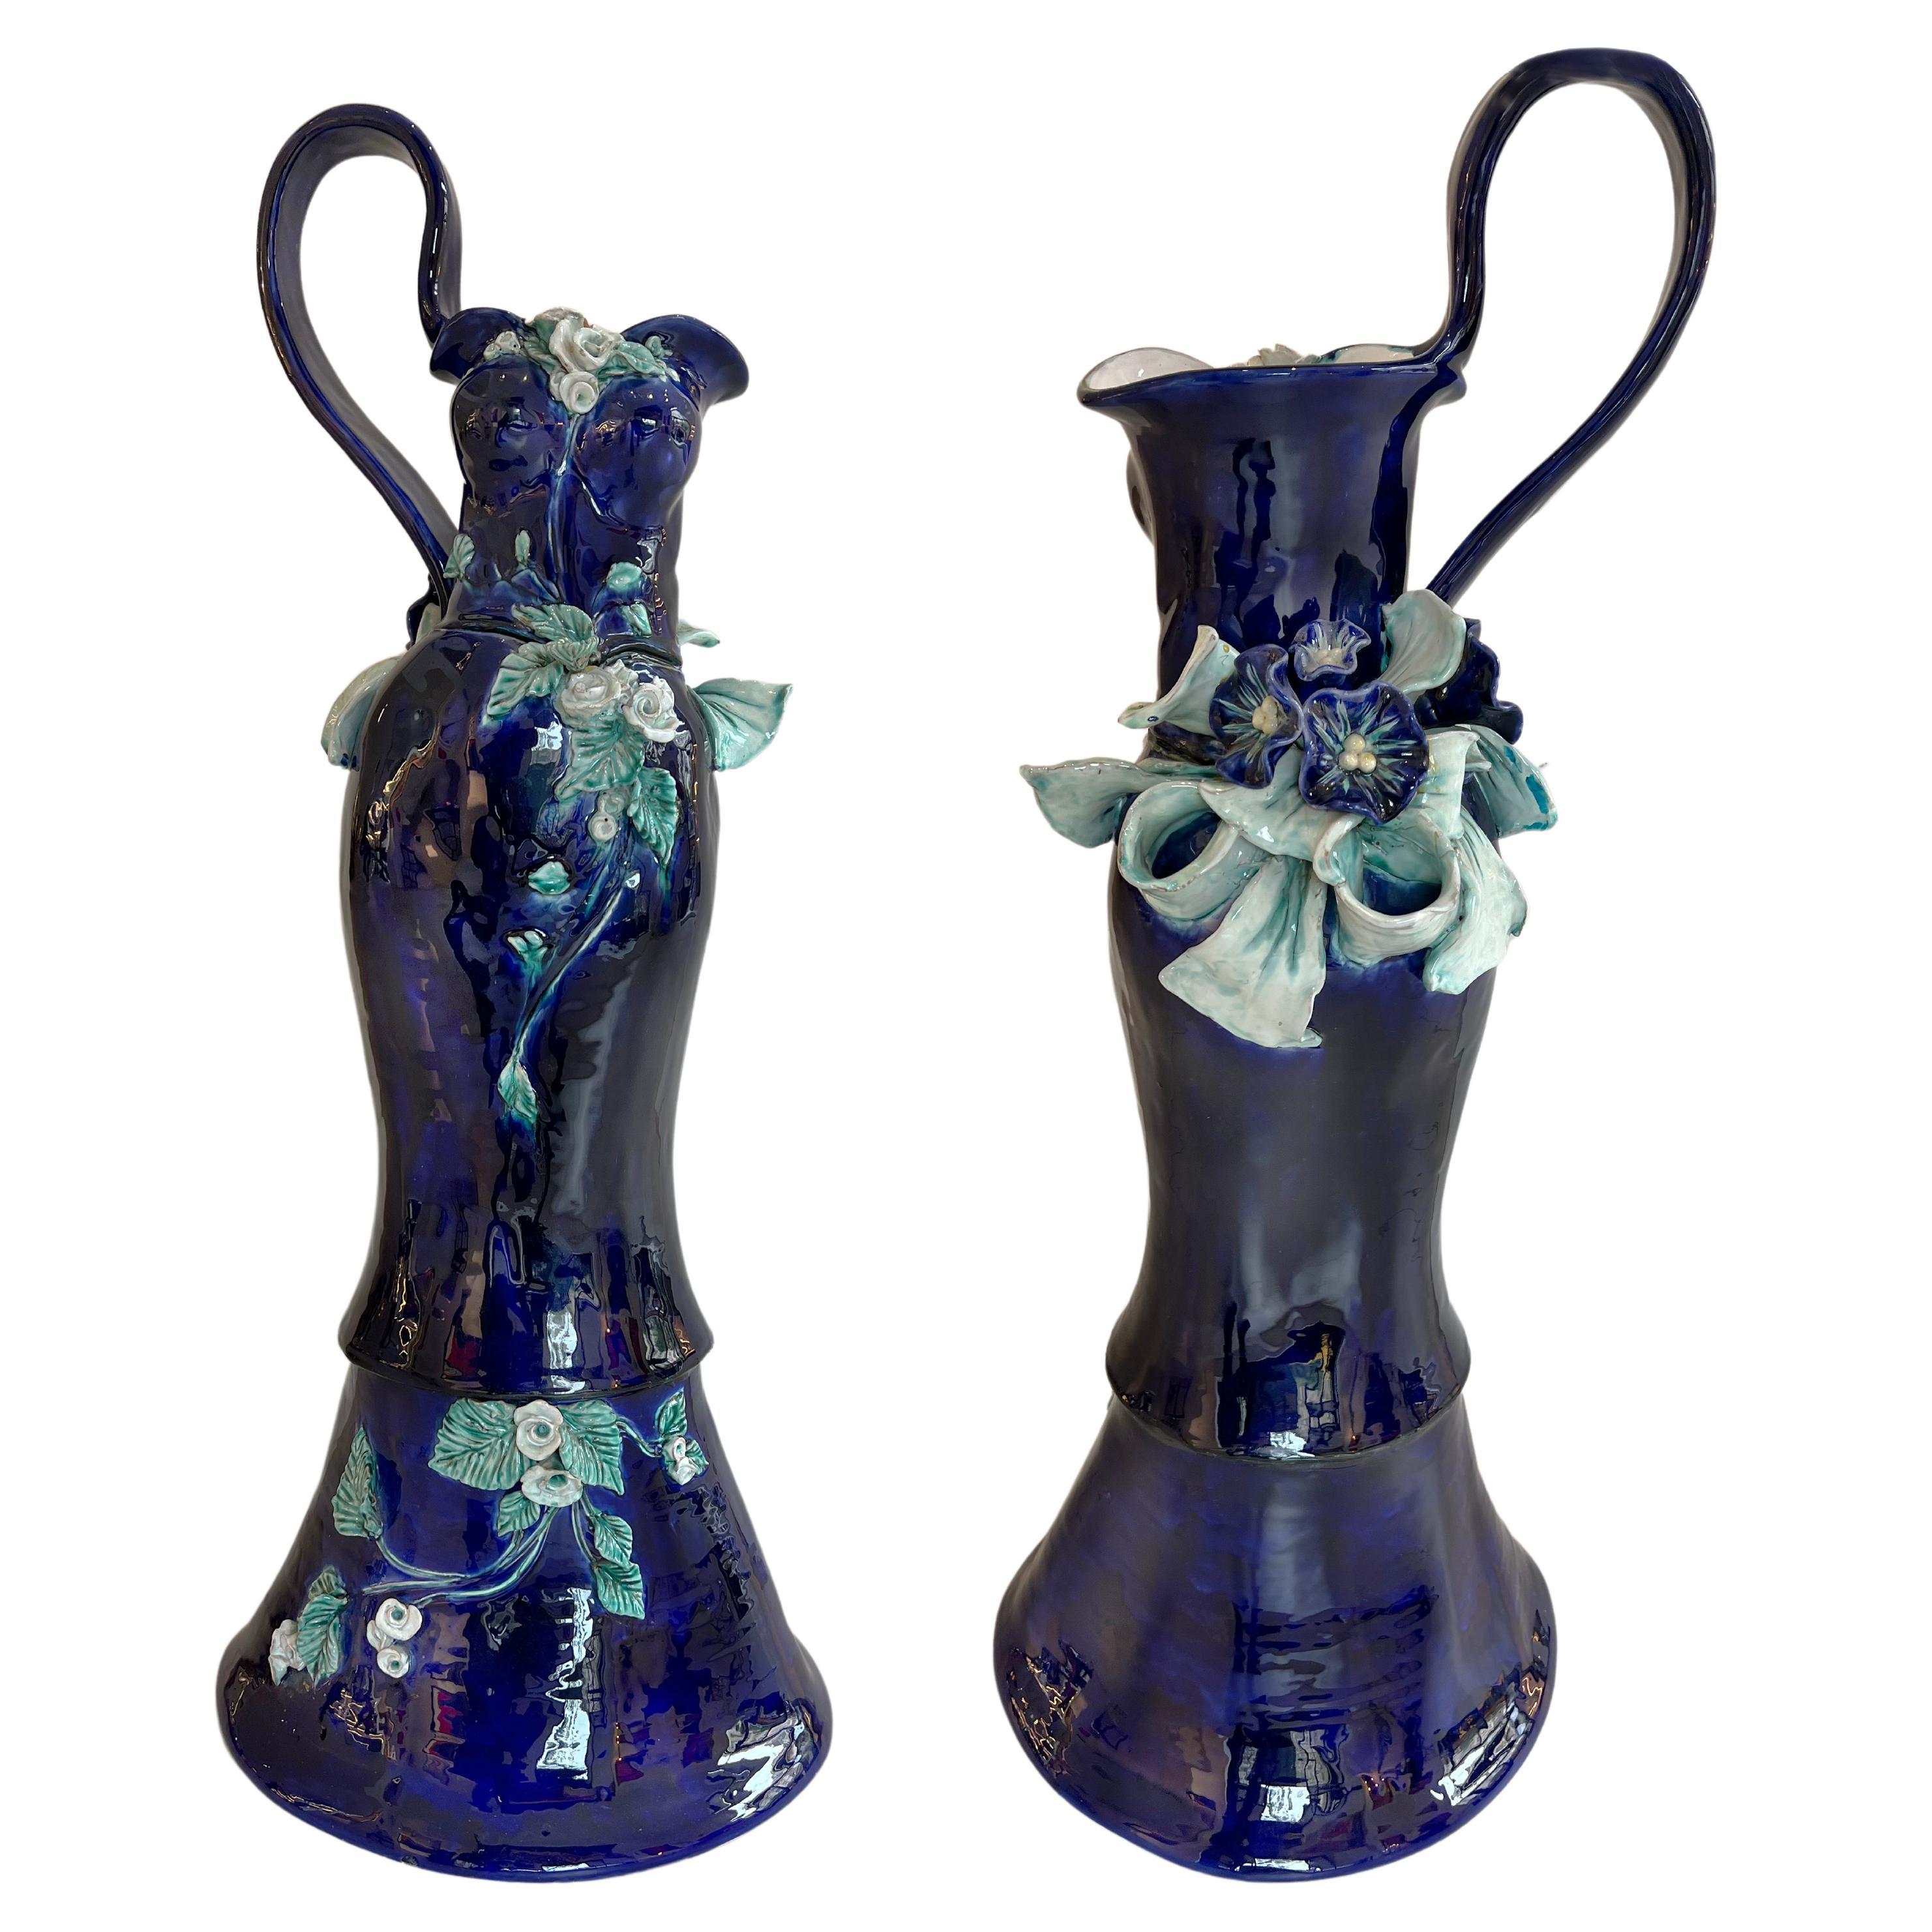 Charming Ceramic Vase